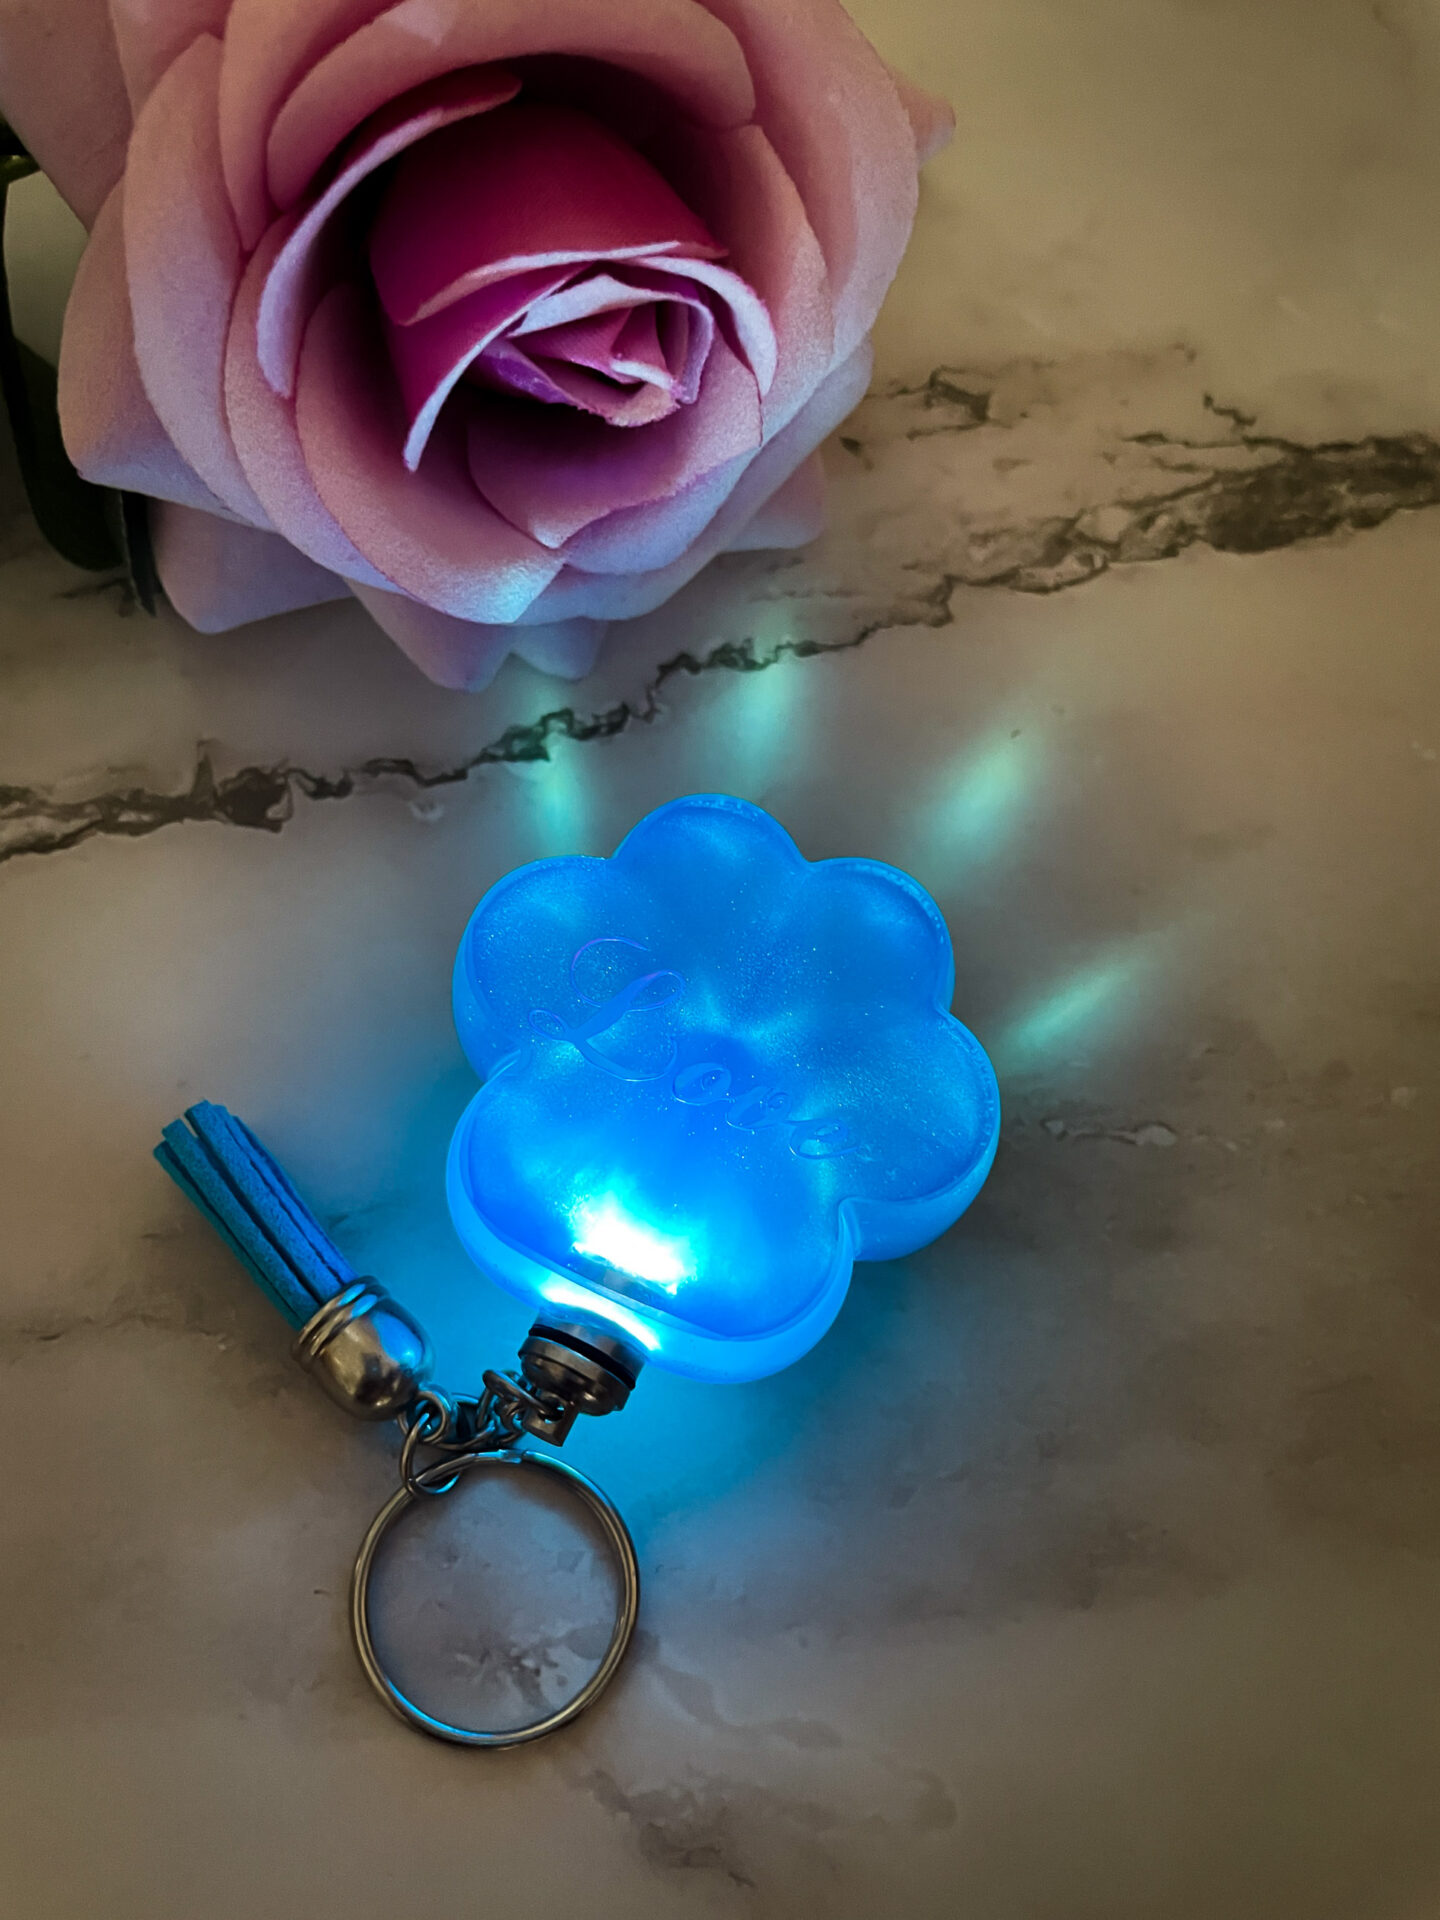 Porte clé patte de chat bleu avec led - boutique idées cadeaux et décoration - boutique en ligne - création française et artisanale.